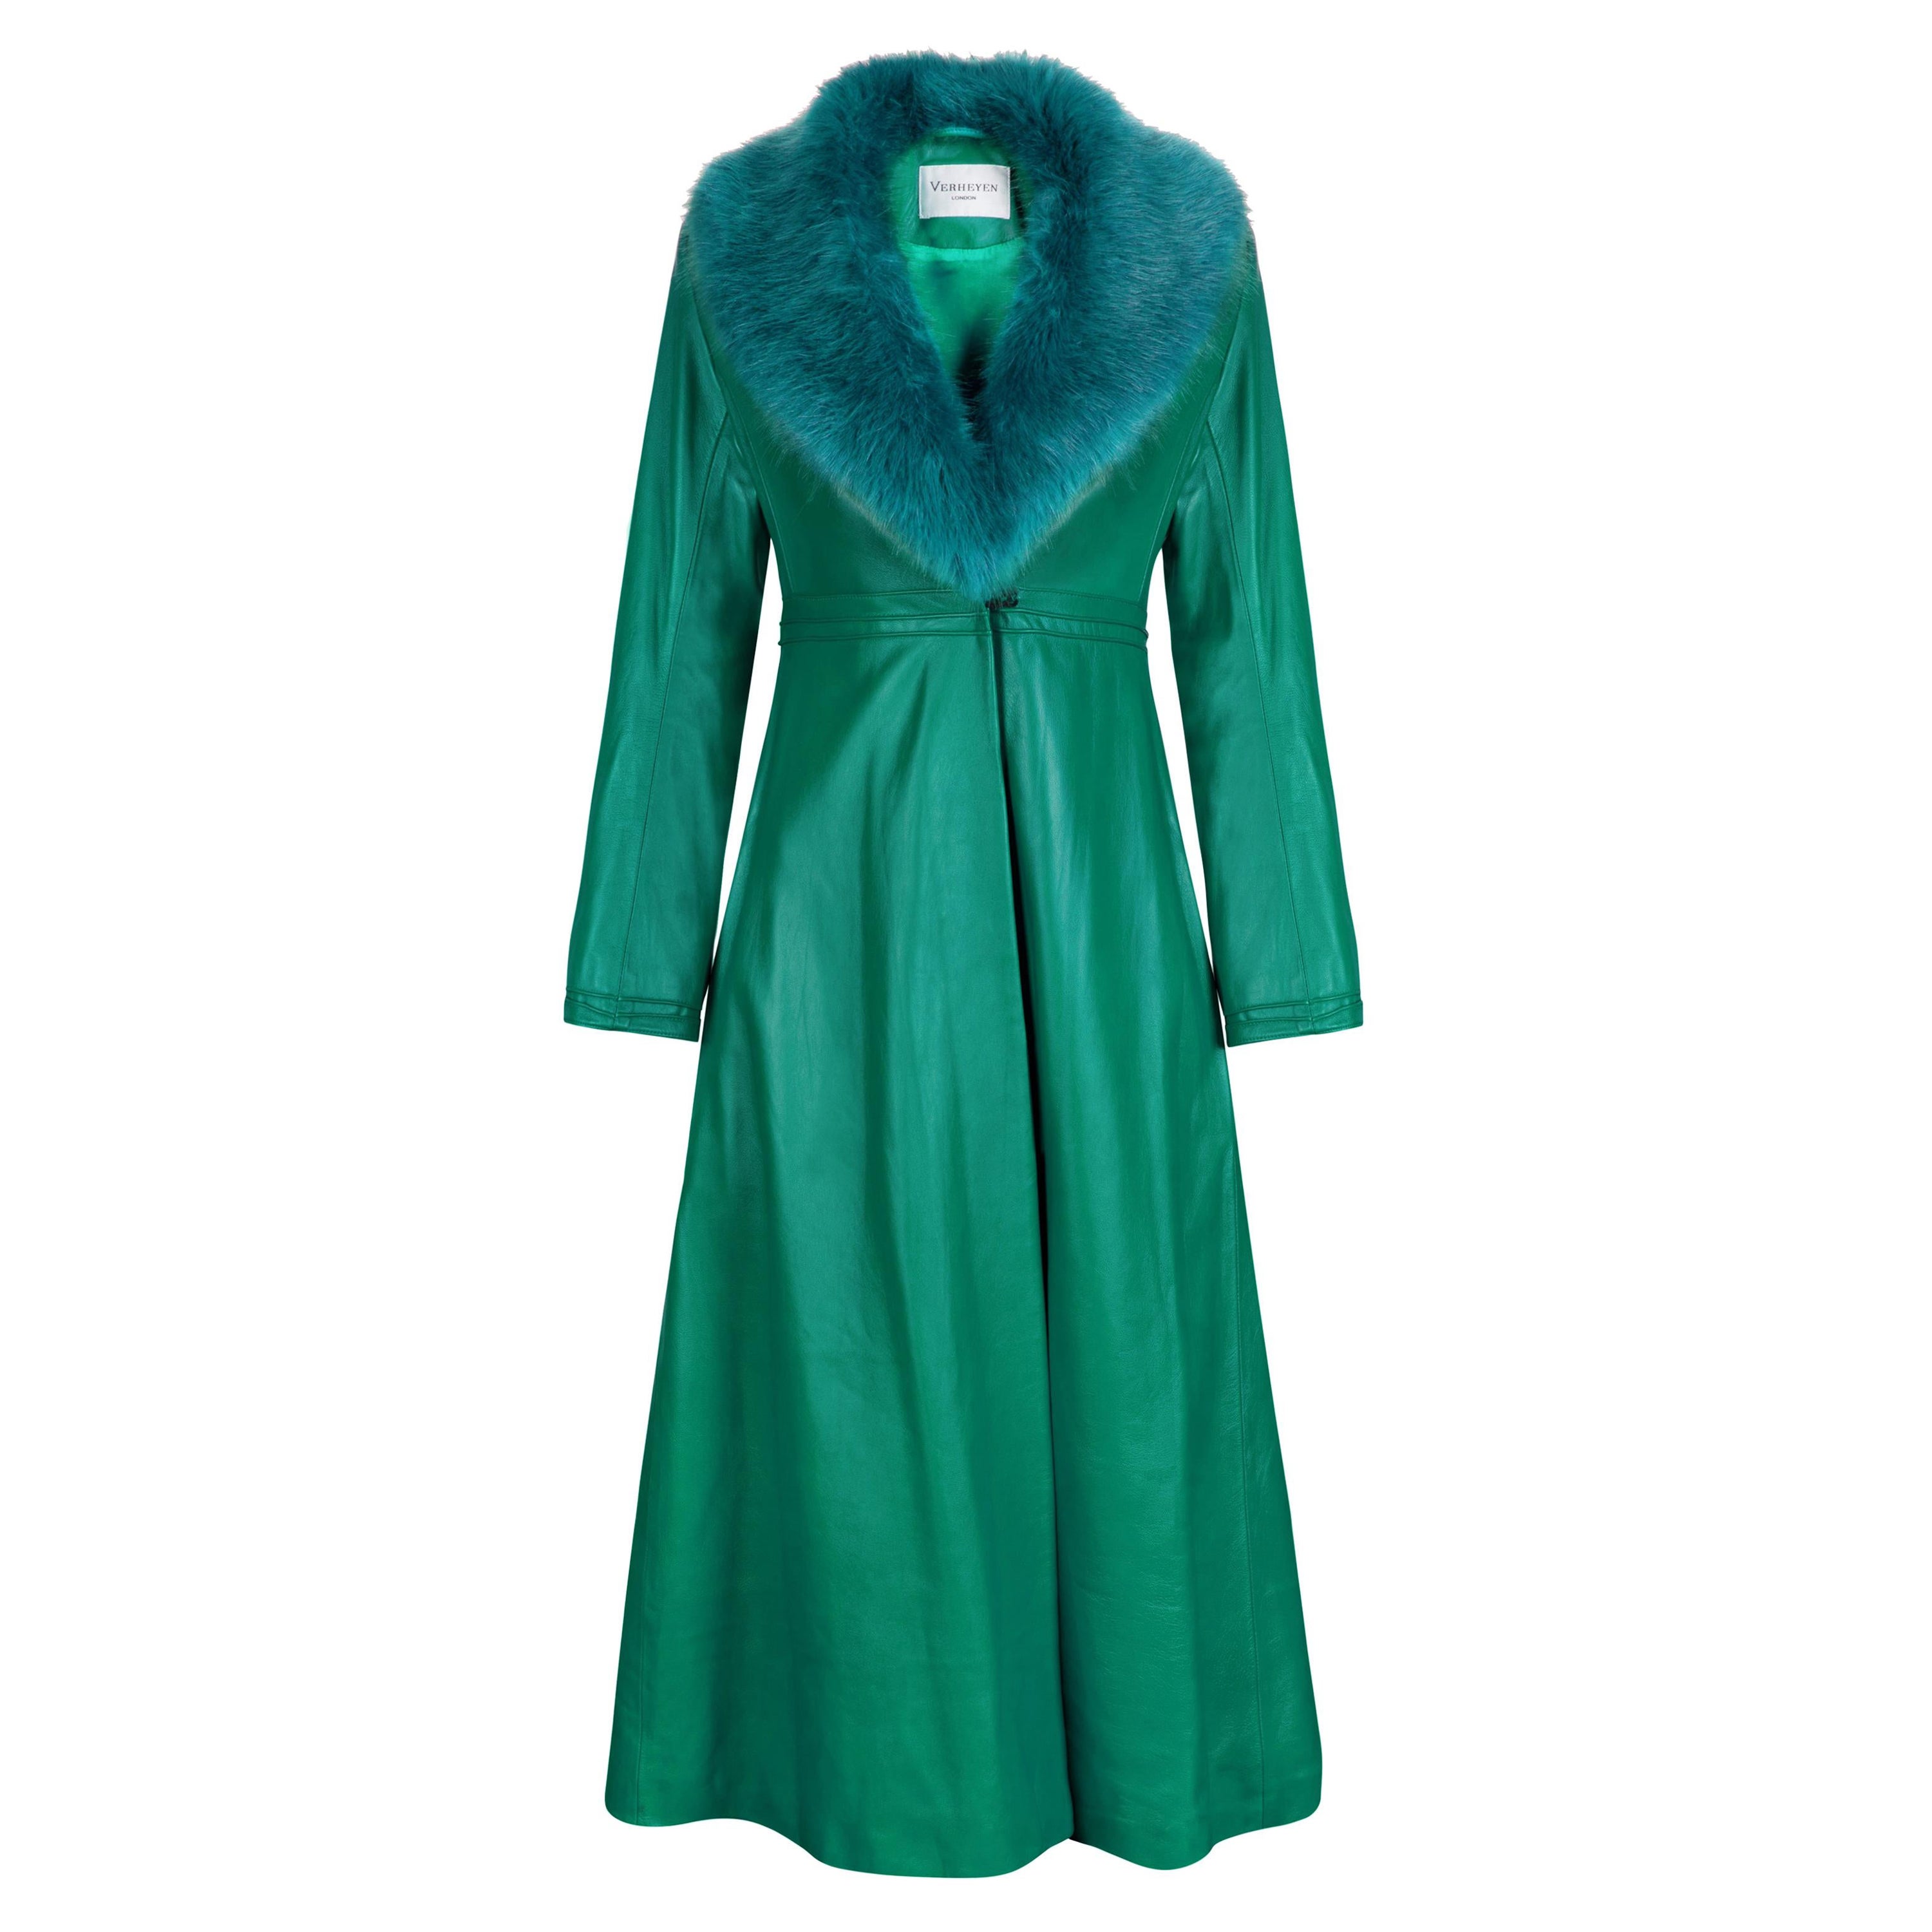 Manteau en cuir Verheyen London Edward en fausse fourrure verte et verte - Taille 14 Royaume-Uni 